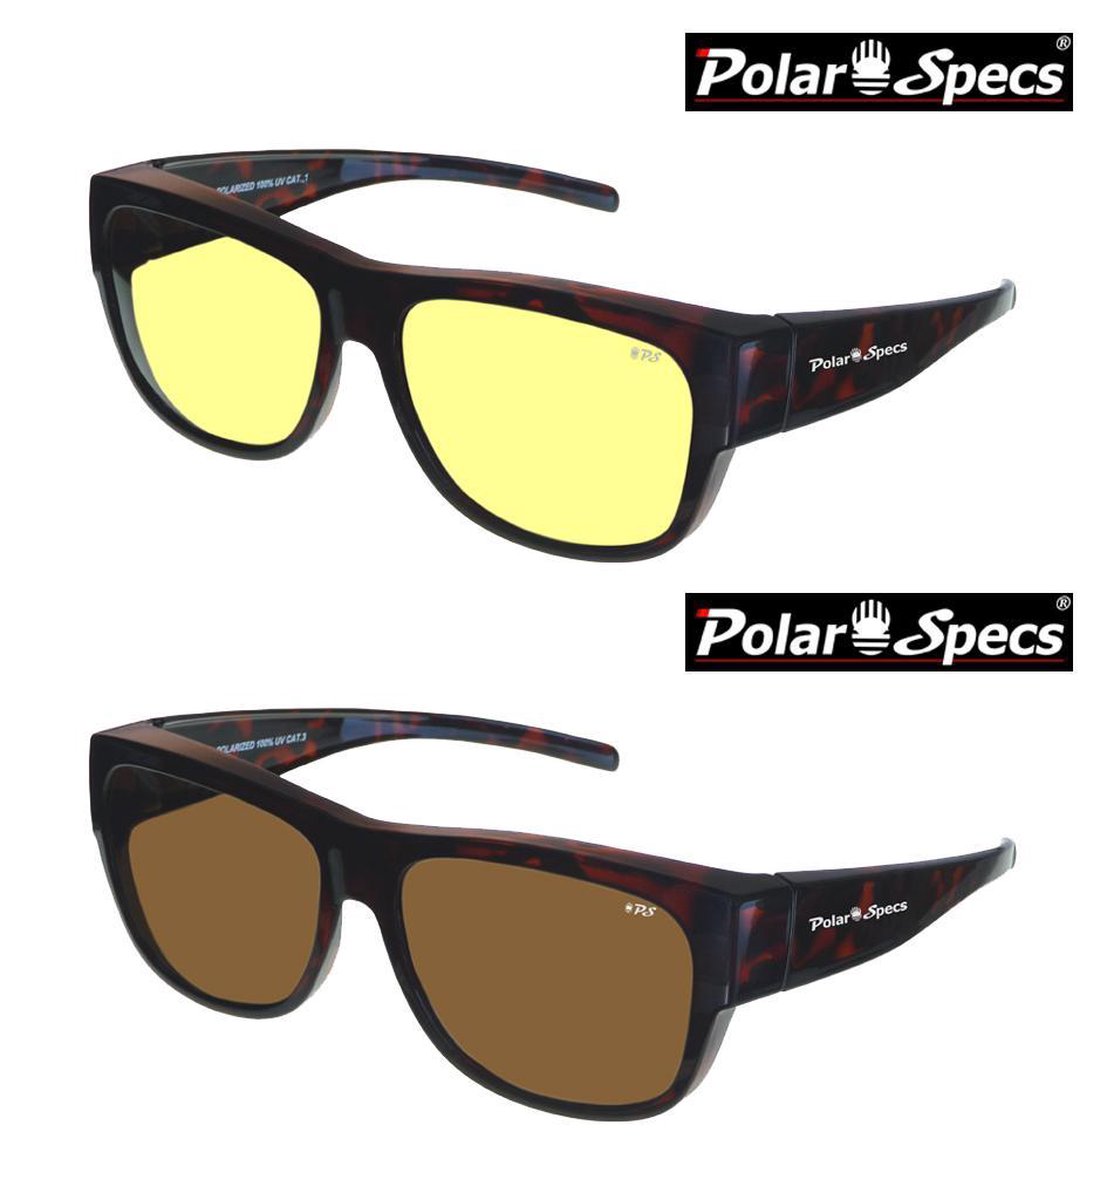 Combinatievoordeel Polar Specs® Overzet Nachtbril + Overzet Zonnebril PS5096 – Tortoise Brown – Polarized – Large – Unisex